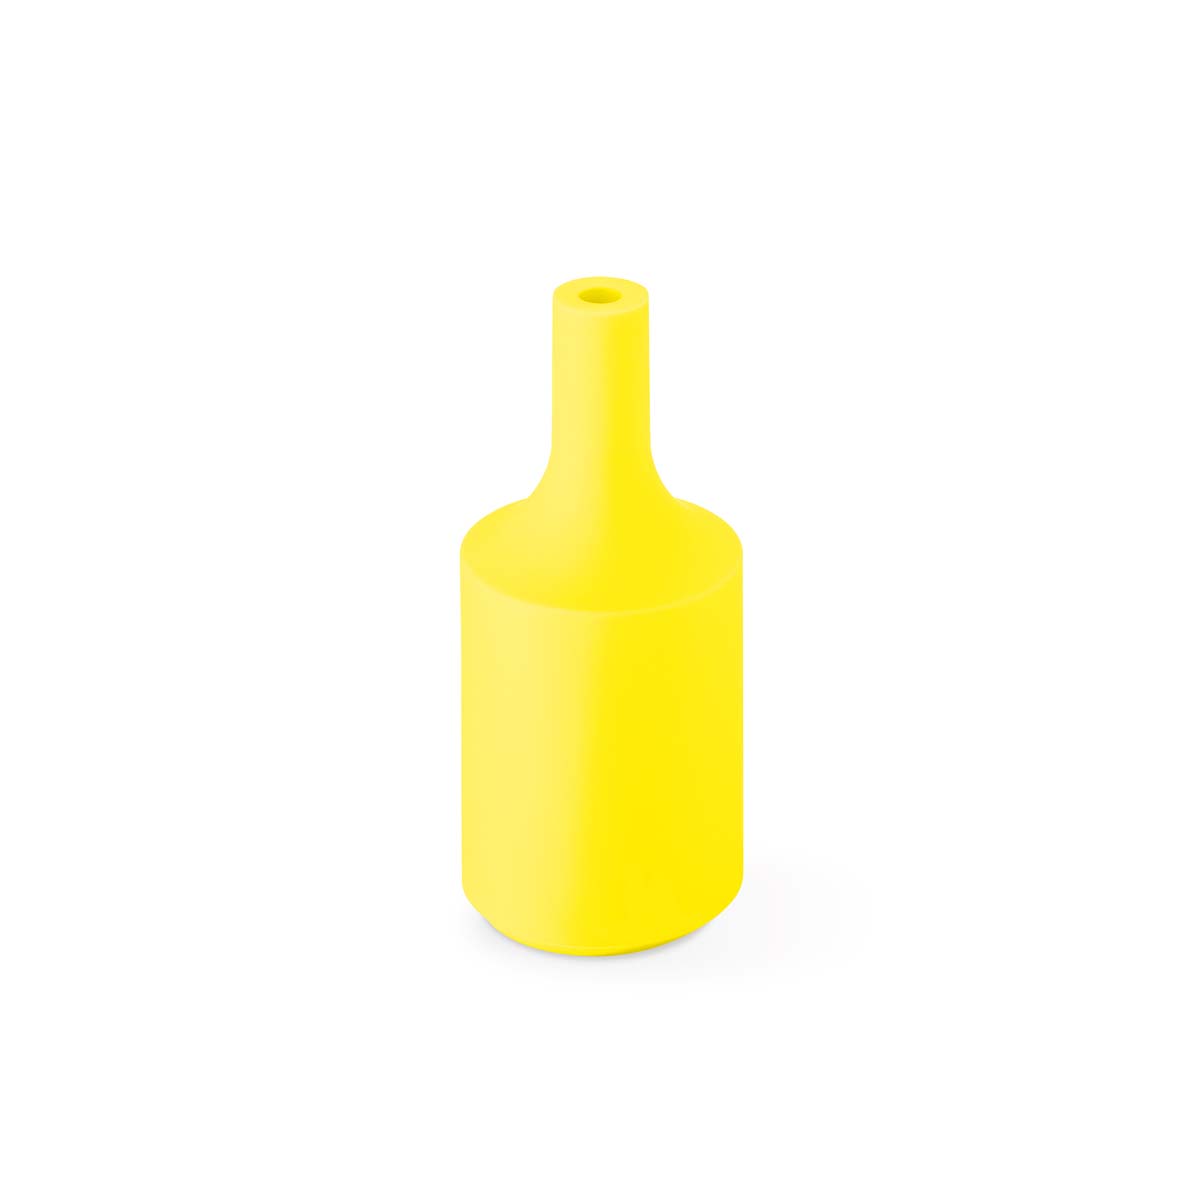 Tangla lighting - TLLH024YE - lamp holder silicon - E27 - bottle - yellow